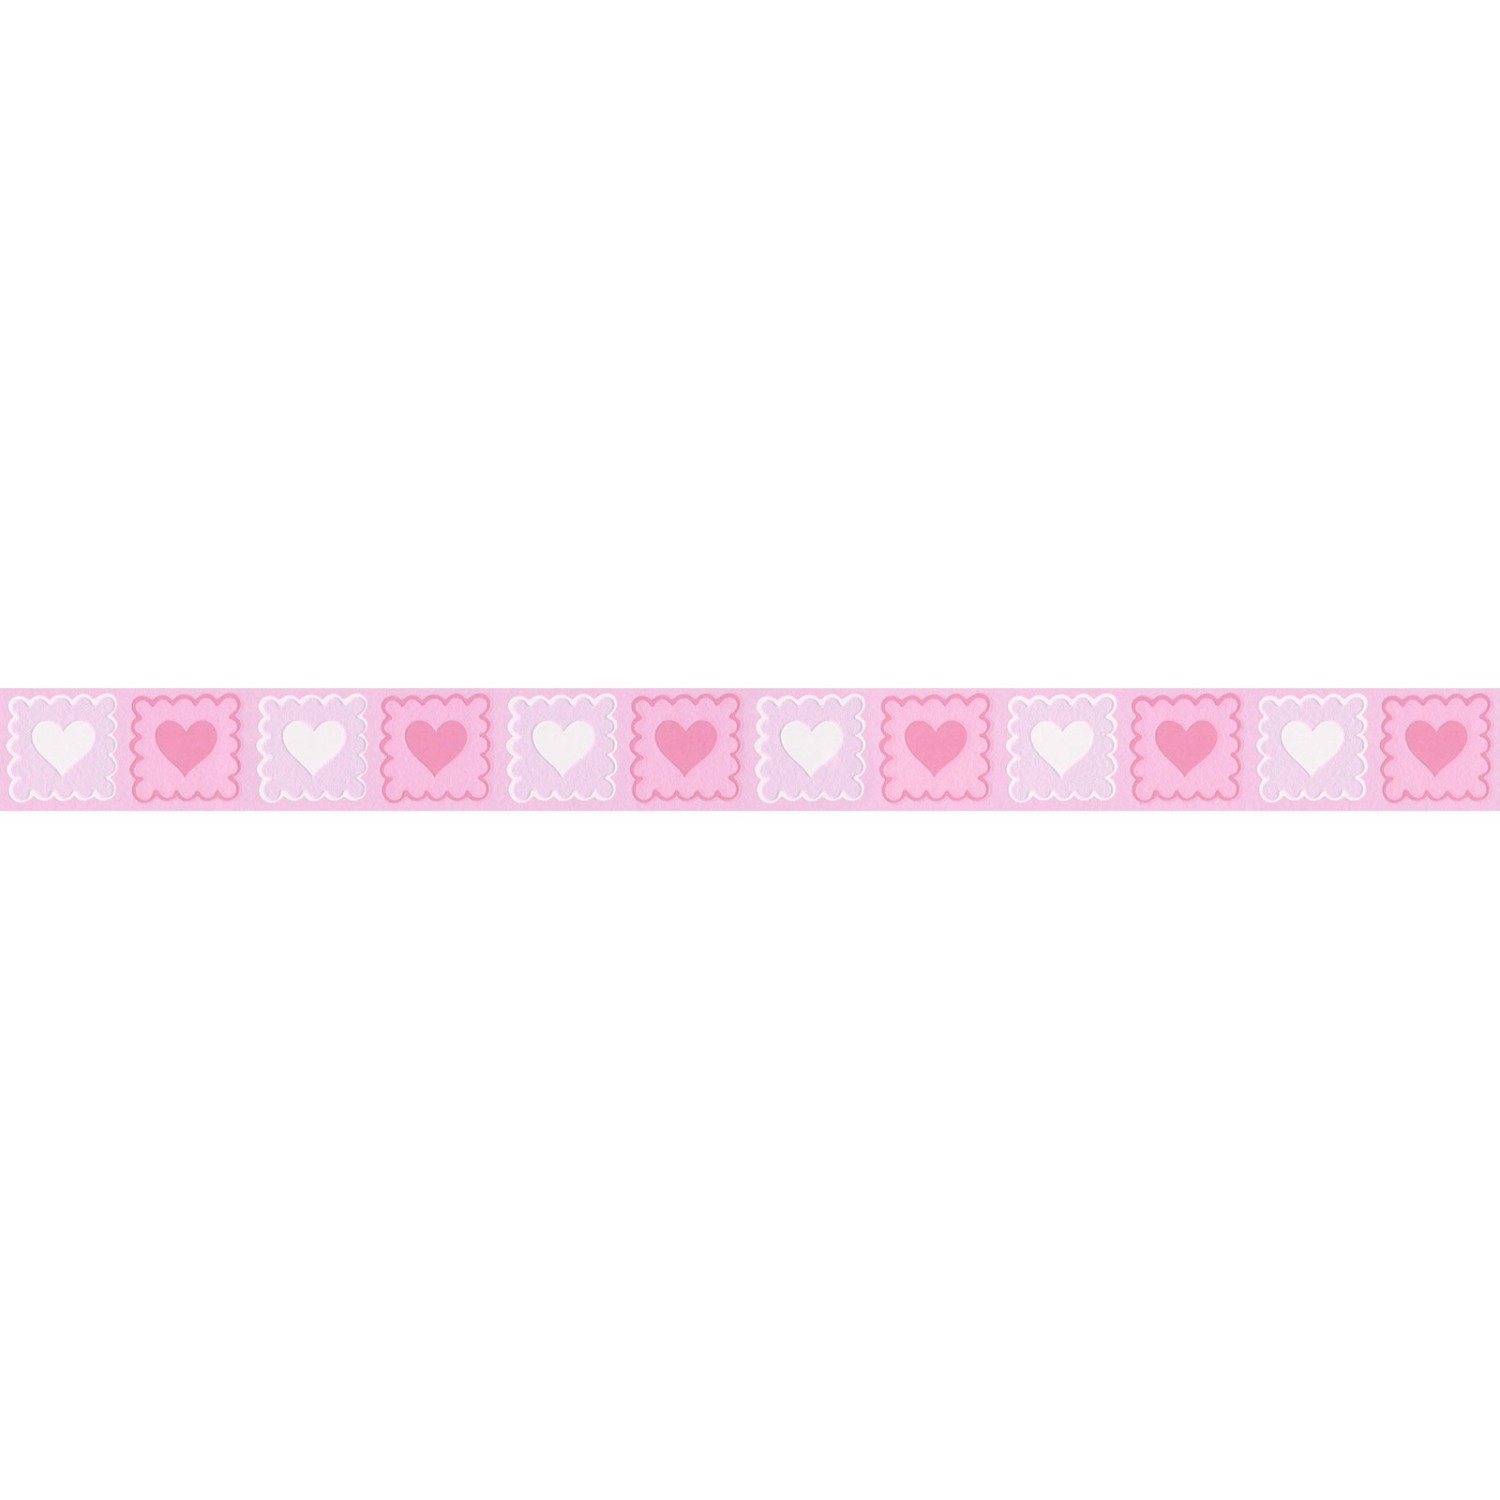 Bricoflor Selbstklebende Tapeten Bordüre mit Herzen Rosa Kinderzimmer Tapetenbordüre für Mädchen Vlies Tapetenborte mit 